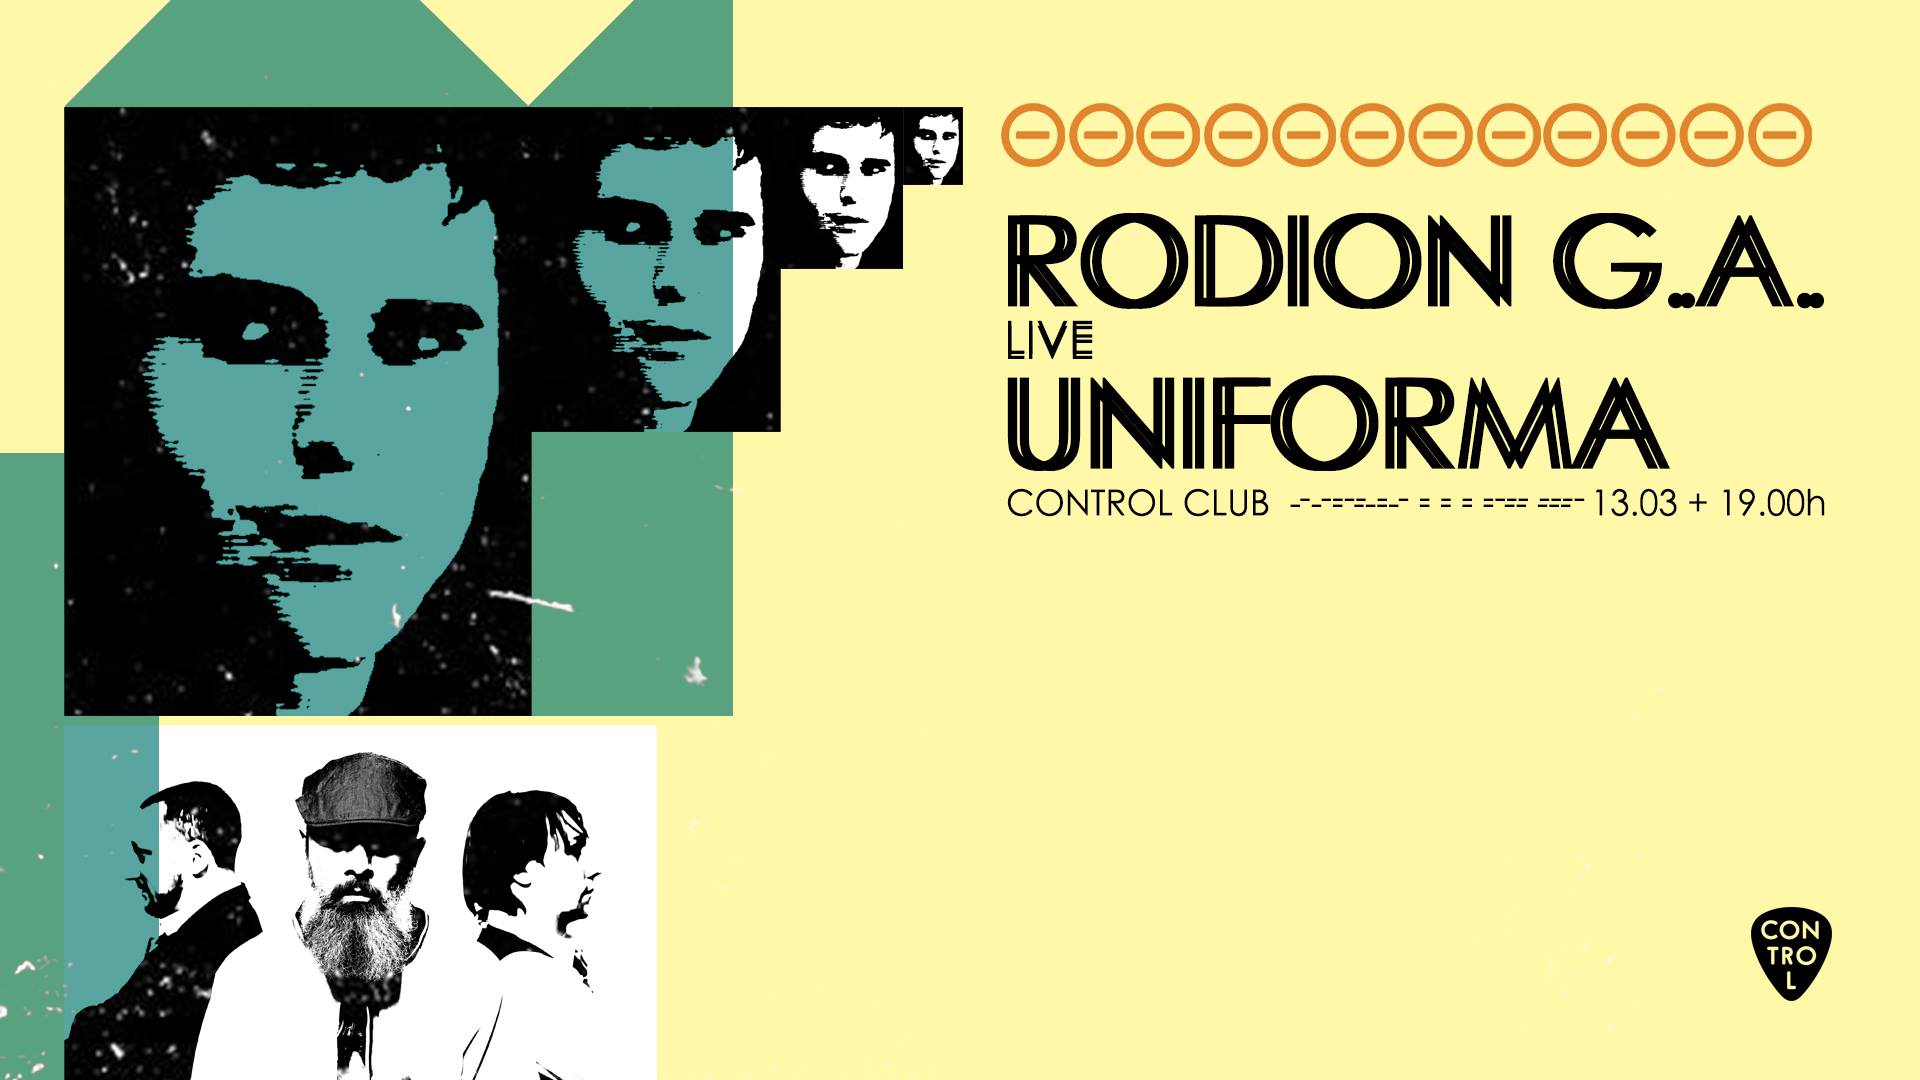 Concert Rodion G.A. & Uniforma live in Control Bucuresti